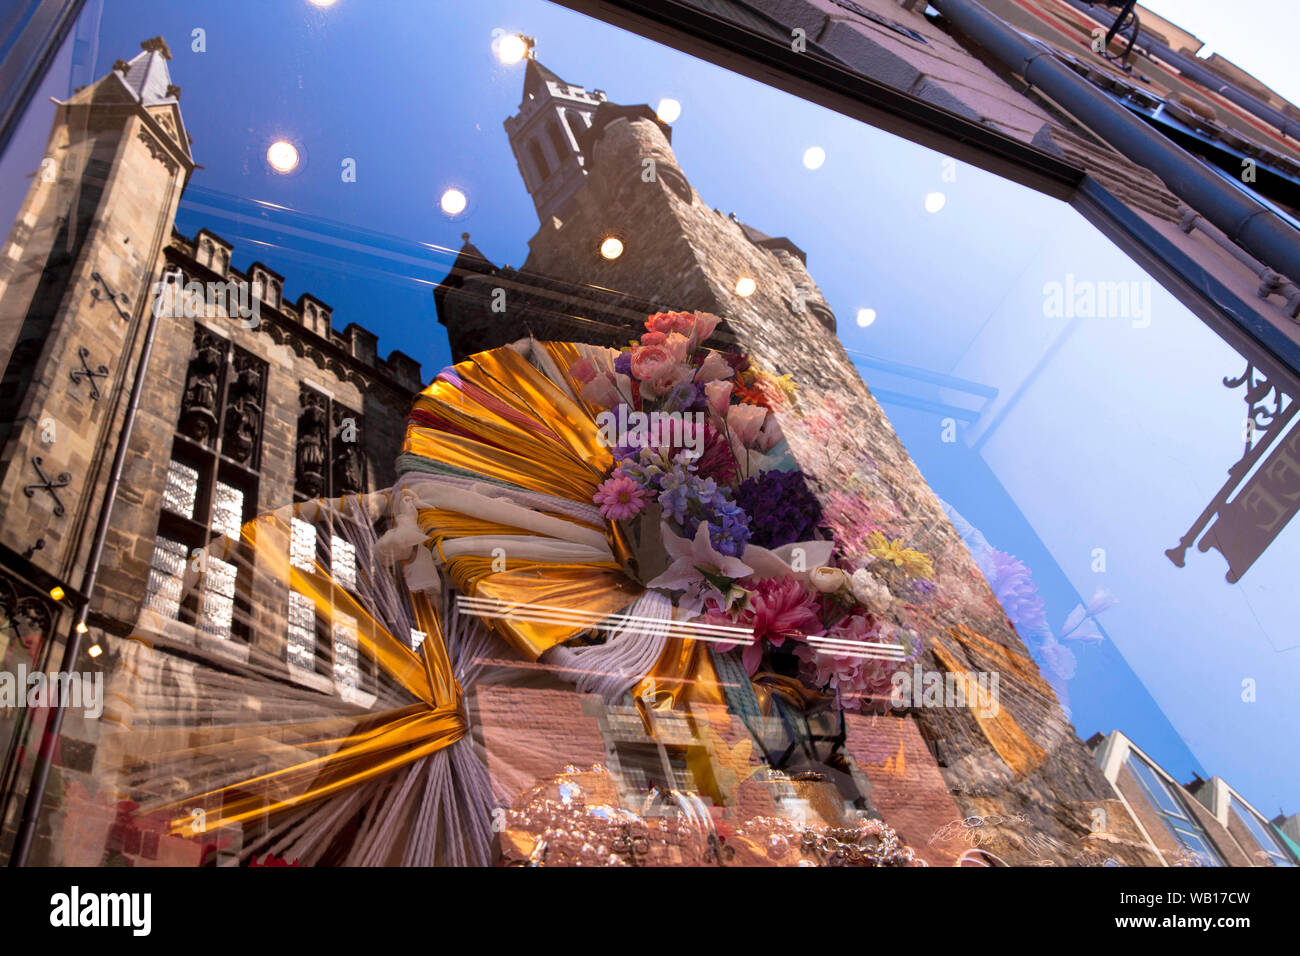 Il Granus tower è riflessa nella vetrina di un negozio, Aachen, Renania settentrionale-Vestfalia, Germania. der Granusturm spiegelt sich in einem Schaufenster, Aachen, Foto Stock